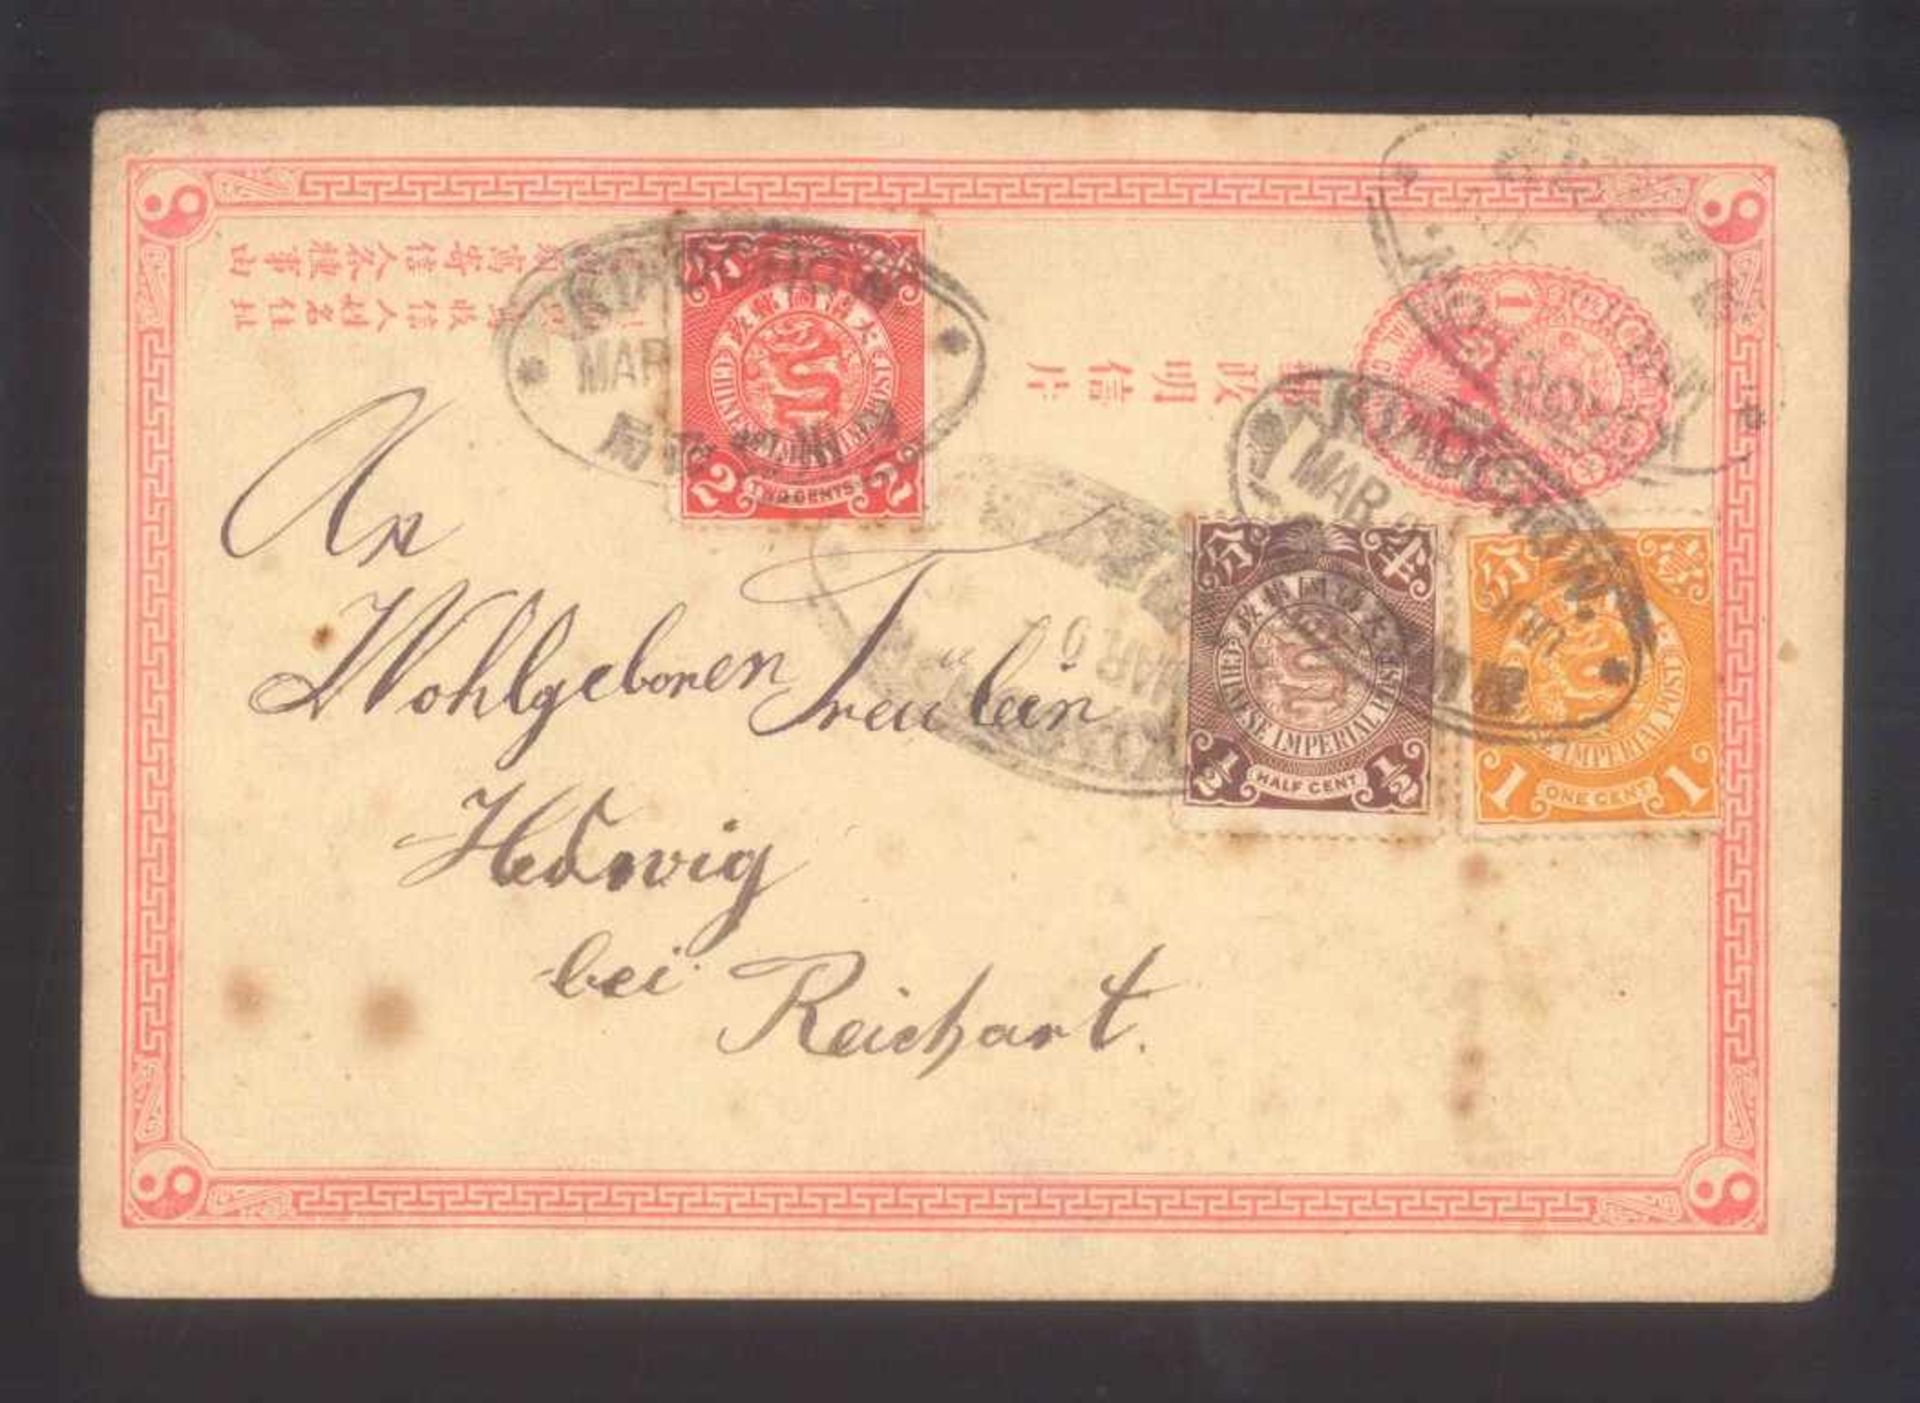 CHINA 1900, KIAUTSCHOUORTSKARTE von "KIAOCHOW MAR 5 1900" mit 3 verschiedenenDrachen - Werten der